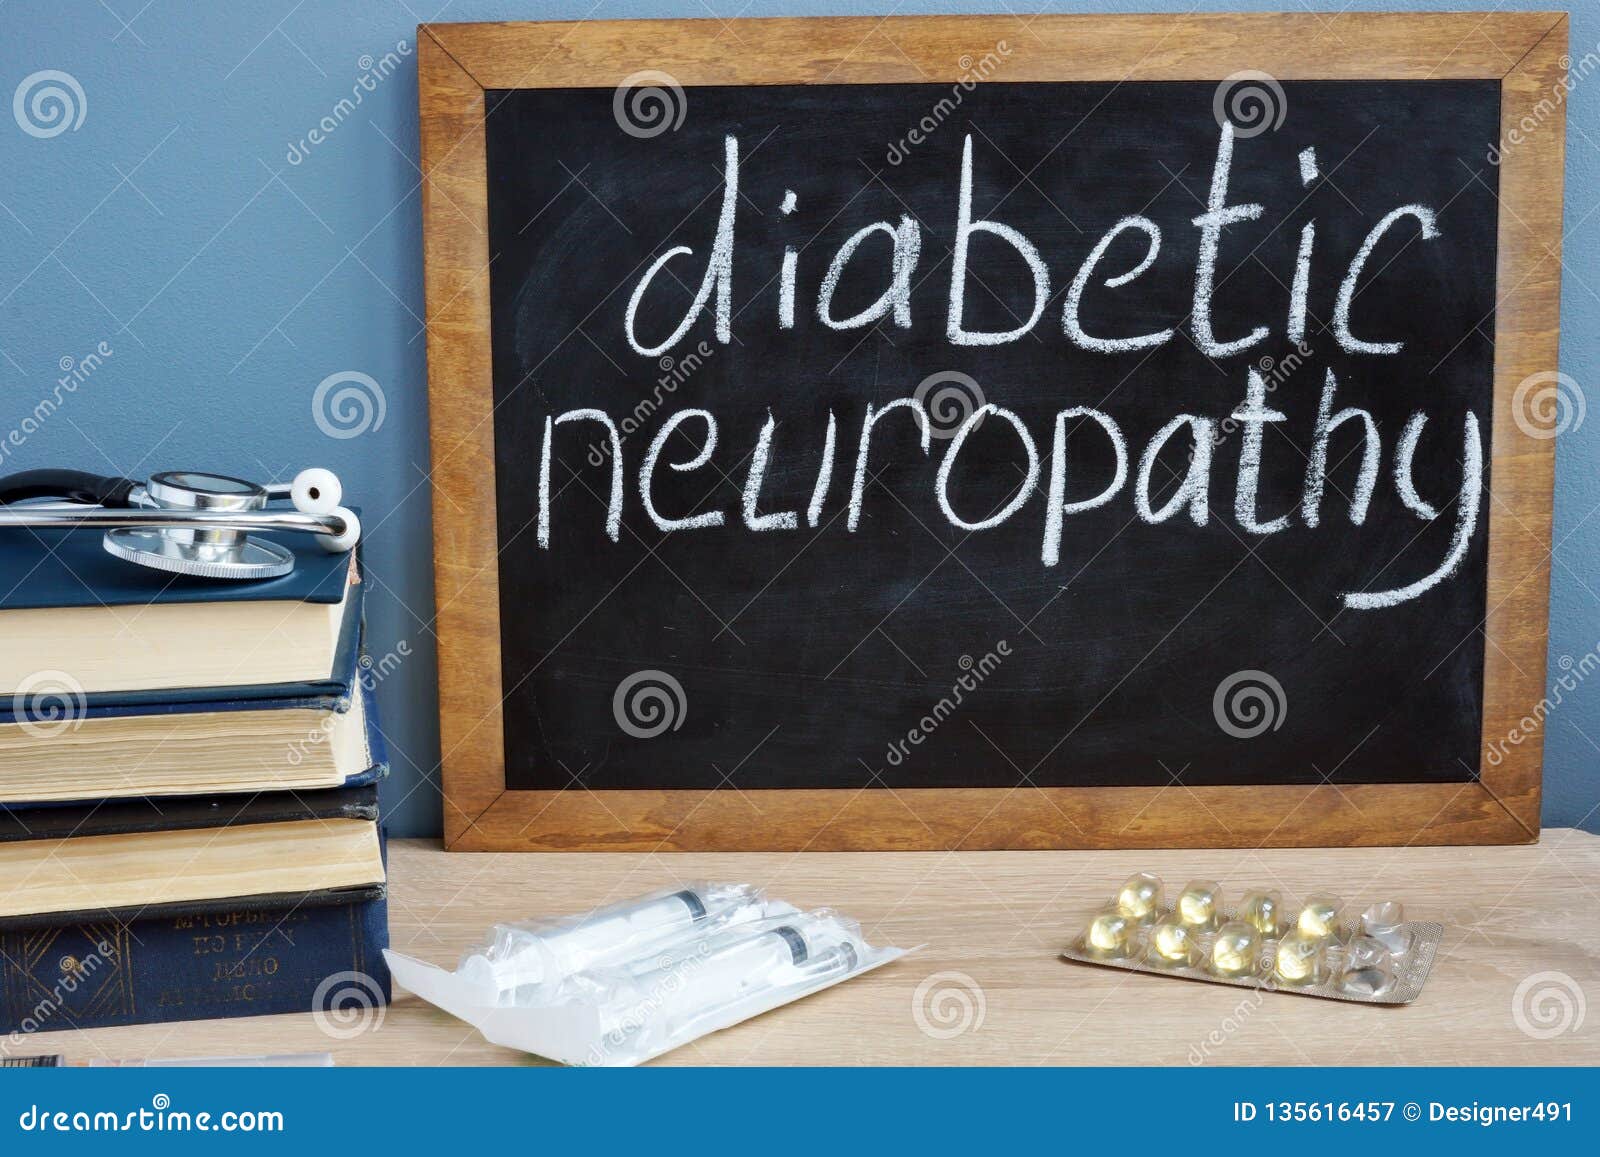 diabetic neuropathy handwritten on a blackboard